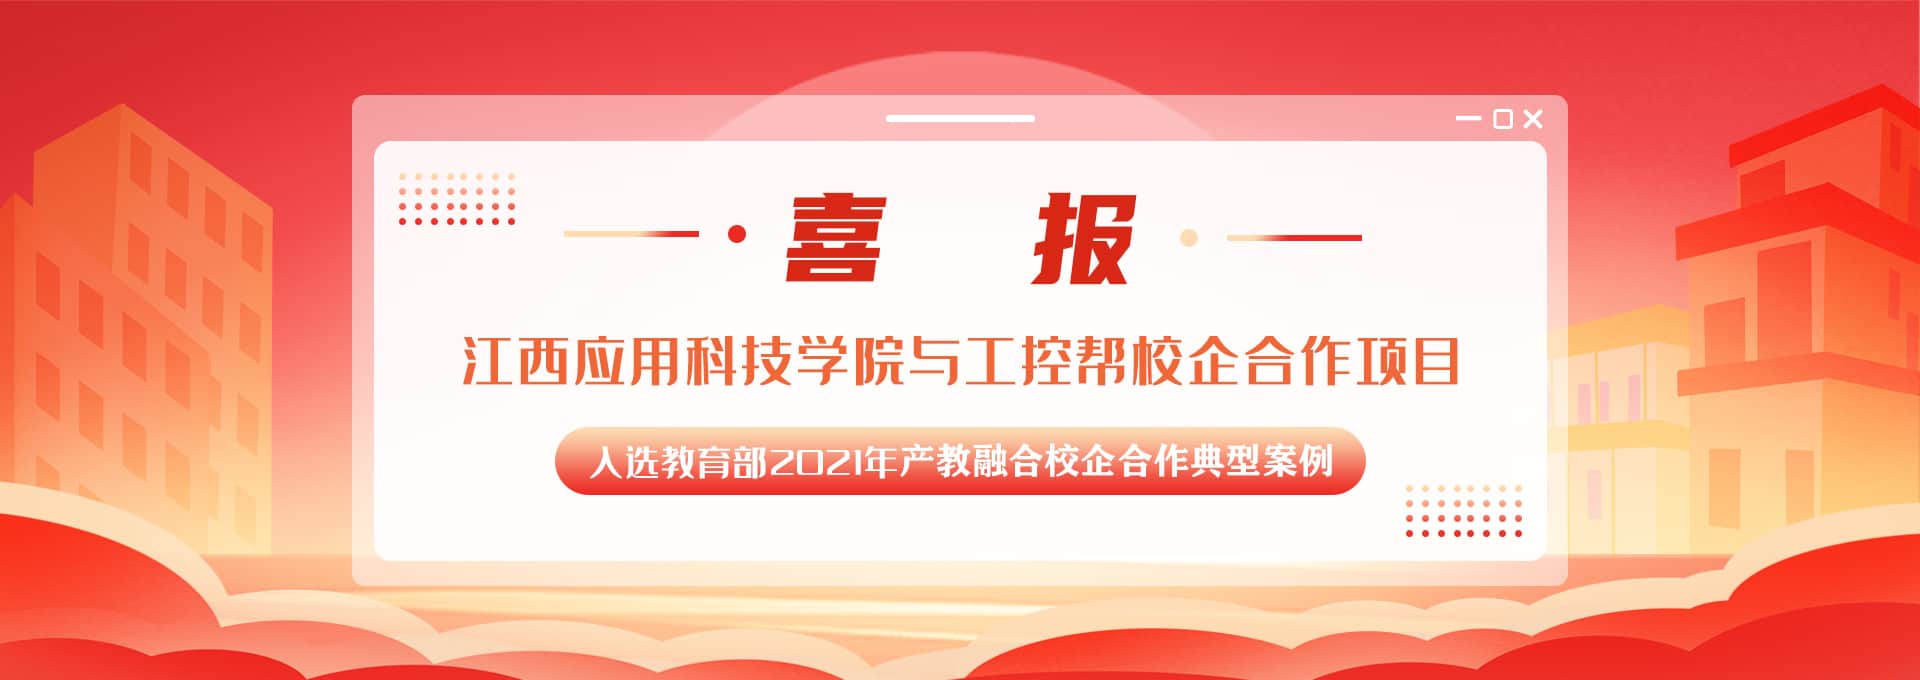 工控帮电工培训、工业机器人培训、PLC培训、自动化培训学校被认定为湖南省首批产教融合型建设企业